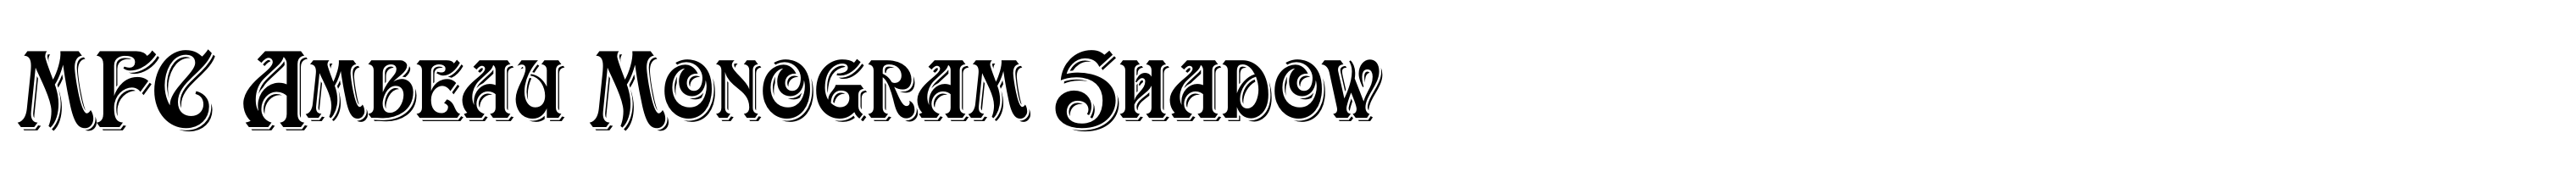 MFC Ambeau Monogram Shadow